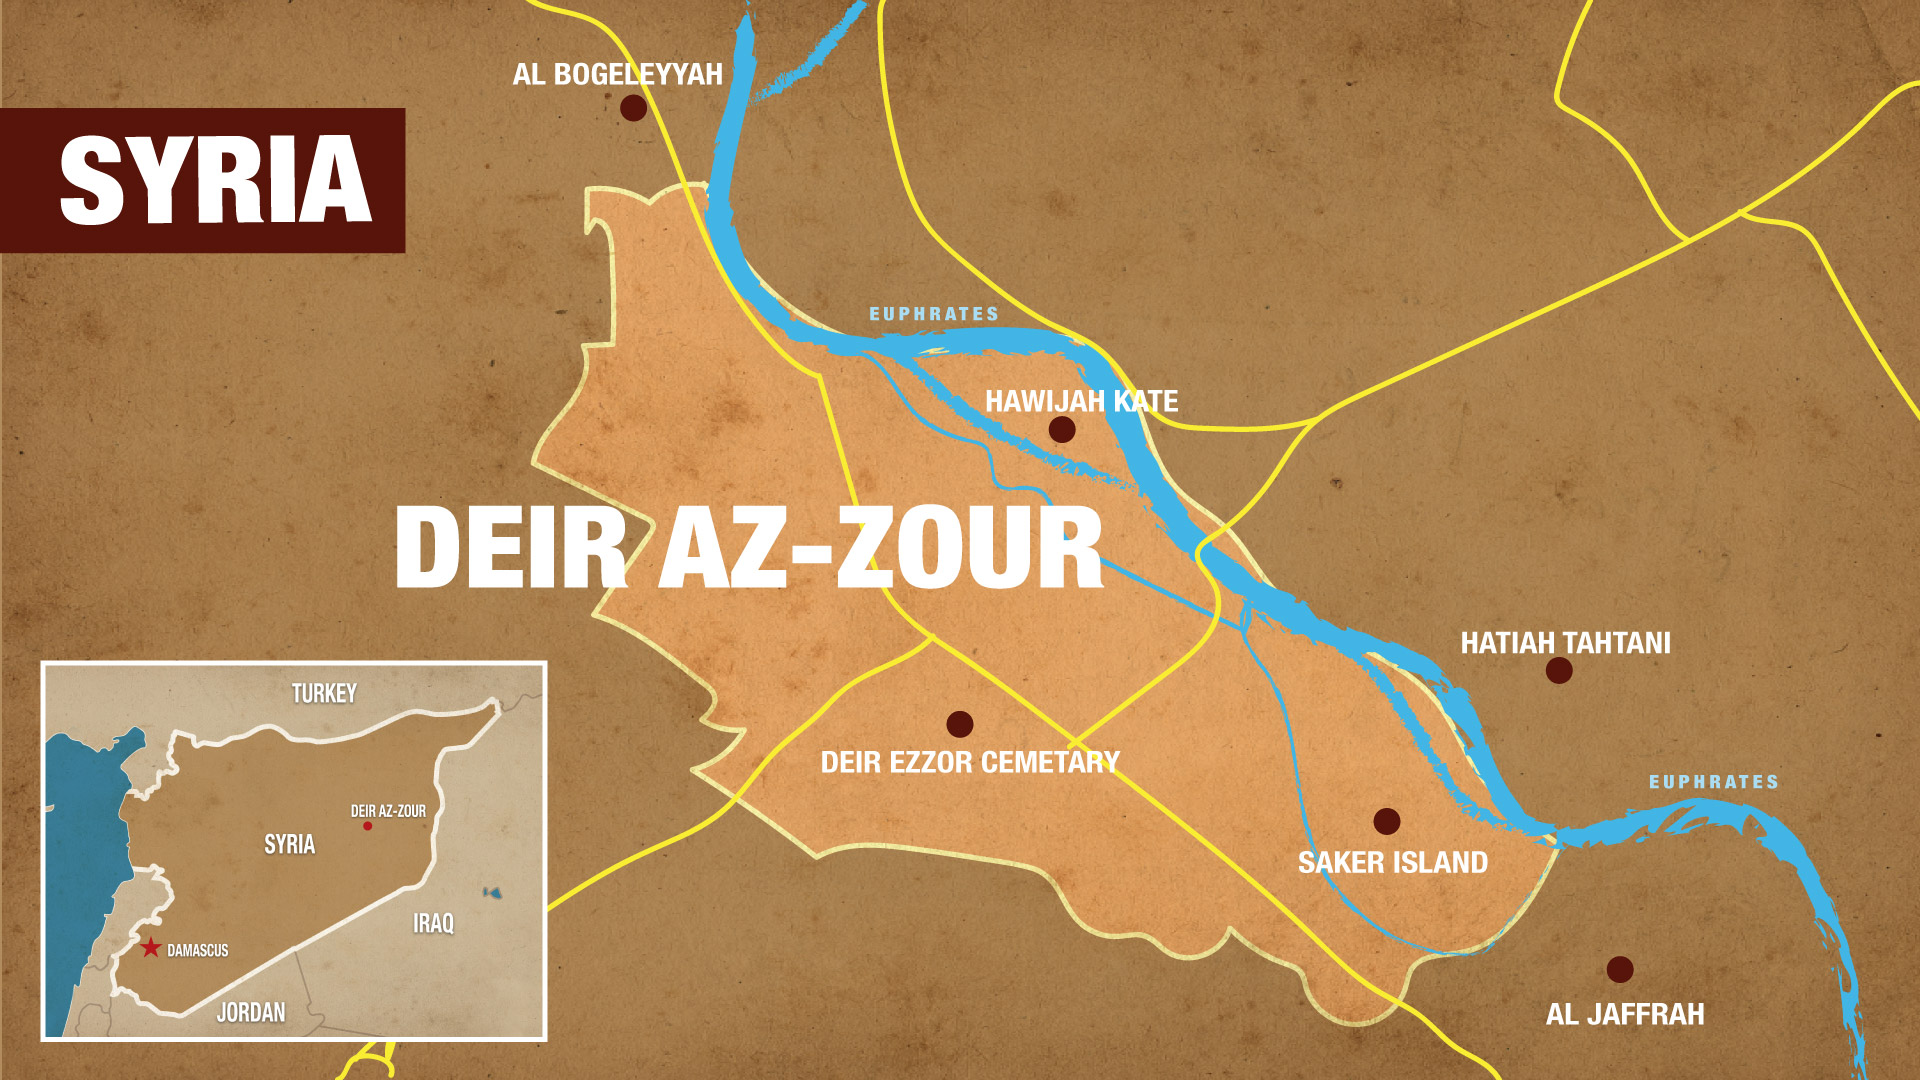 MAP-Syria-Deir az-Zour.jpg